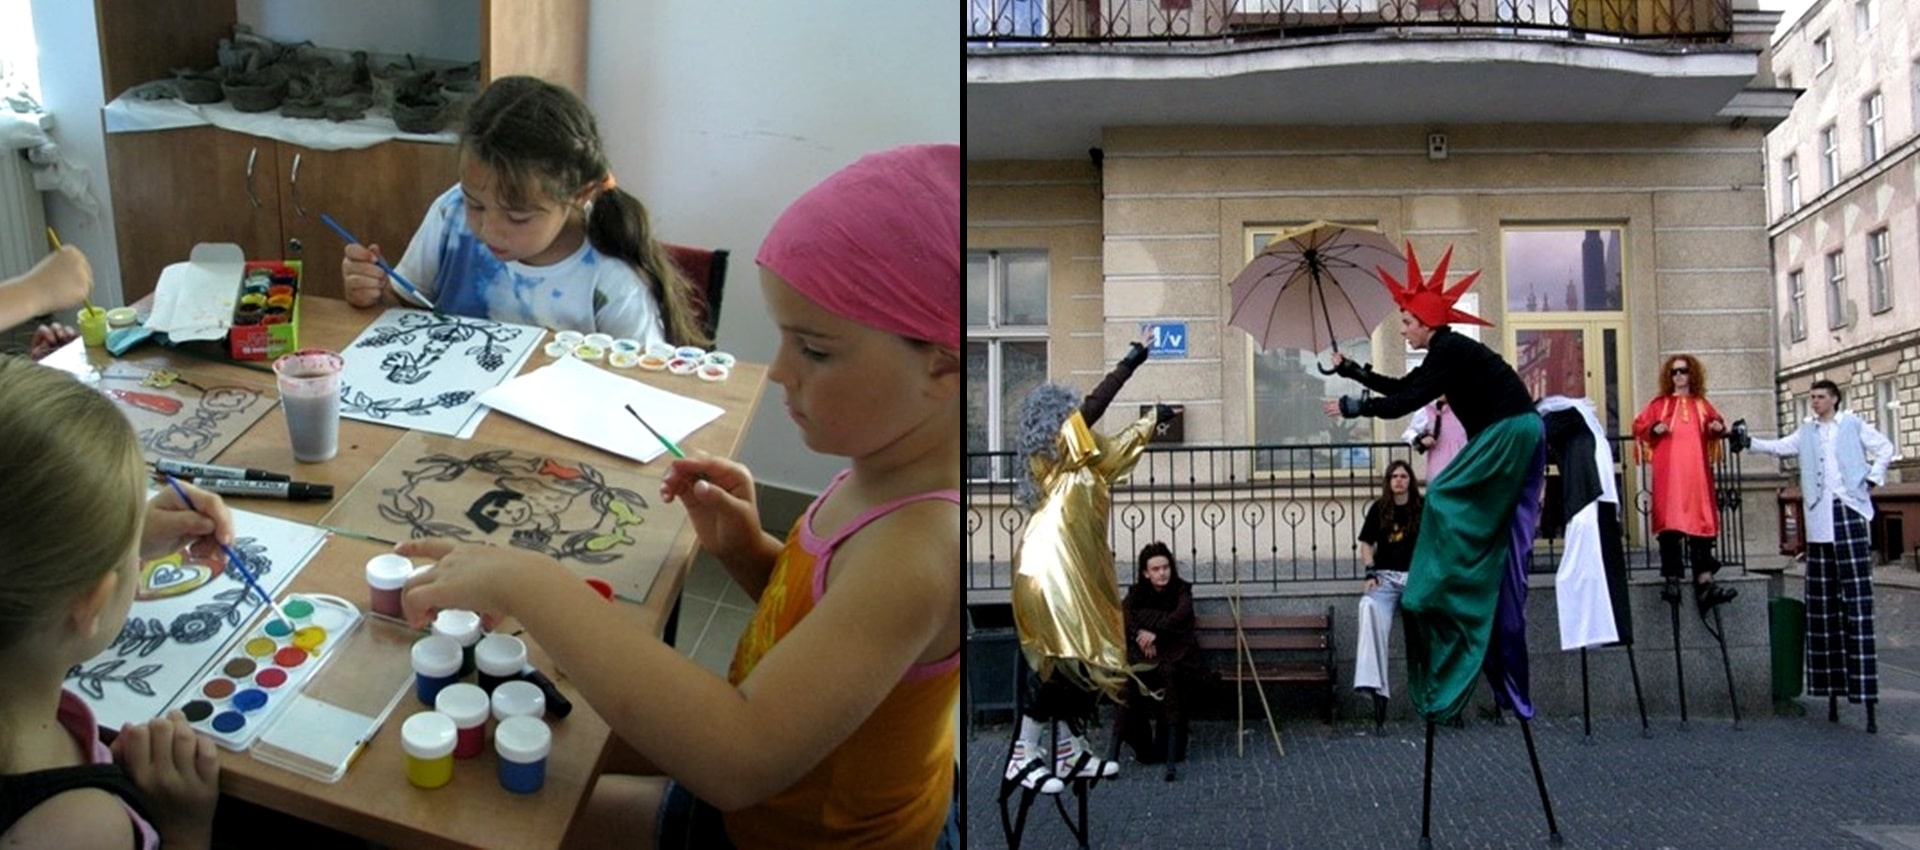 Dwa połączone ze sobą zdjęcia, na zdjęciu po lewej stronie trójka dzieci siedząca przy stole i malująca obrazy farbkami, a po prawej stronie dwójka osób na szczudłach w przestrzeni ulicznej